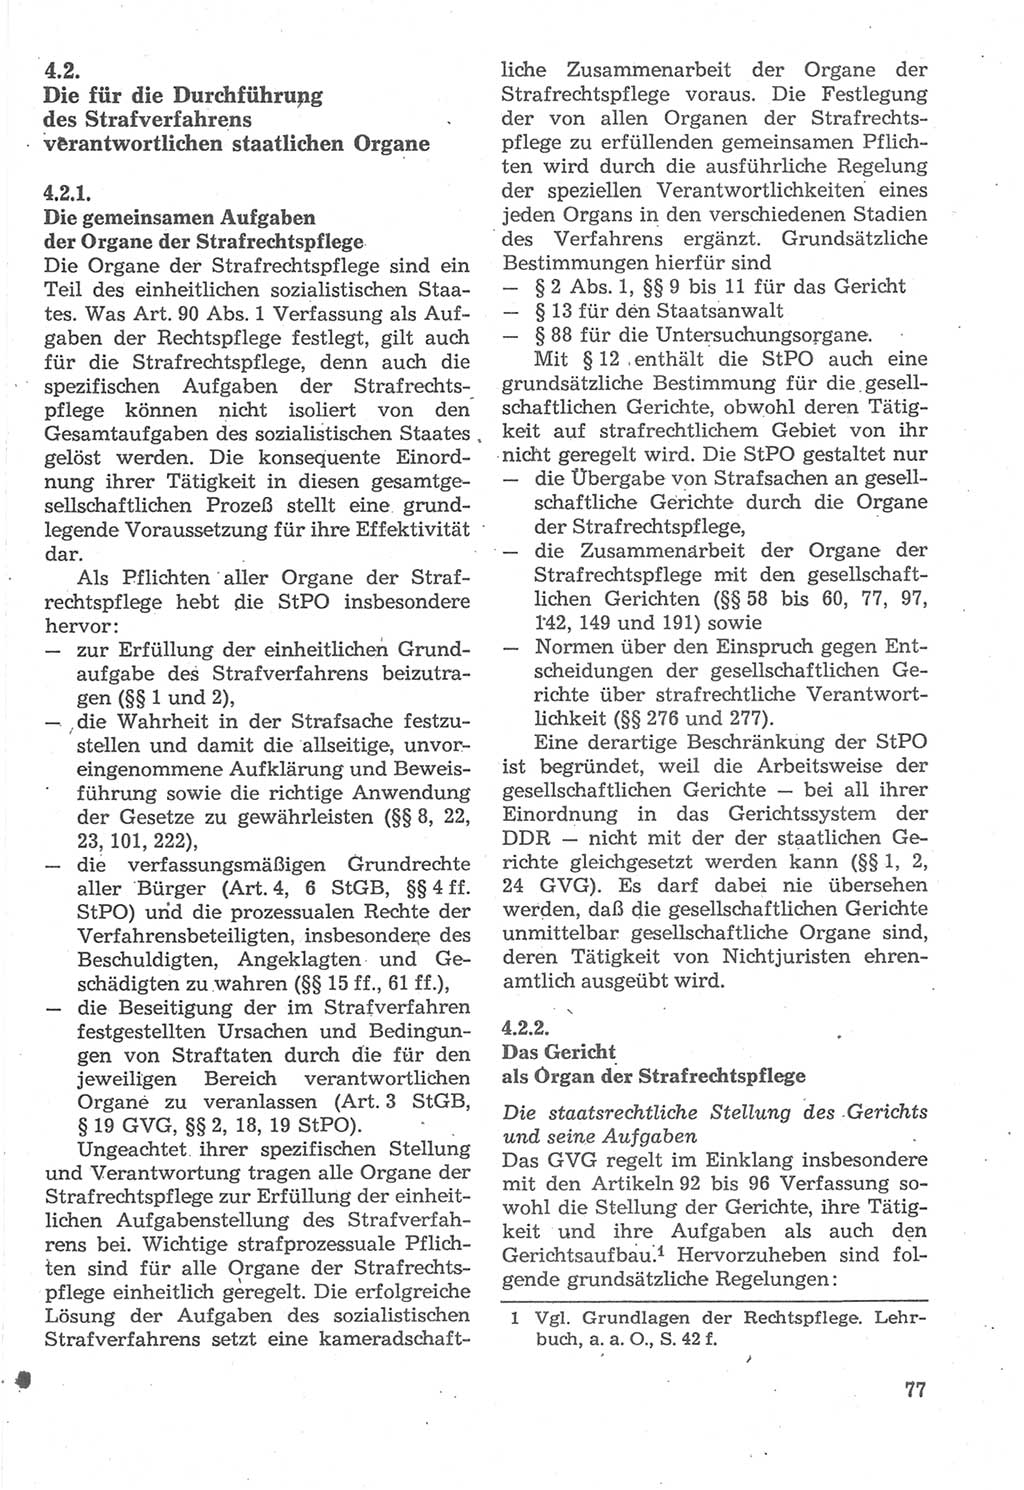 Strafverfahrensrecht [Deutsche Demokratische Republik (DDR)], Lehrbuch 1987, Seite 77 (Strafverf.-R. DDR Lb. 1987, S. 77)